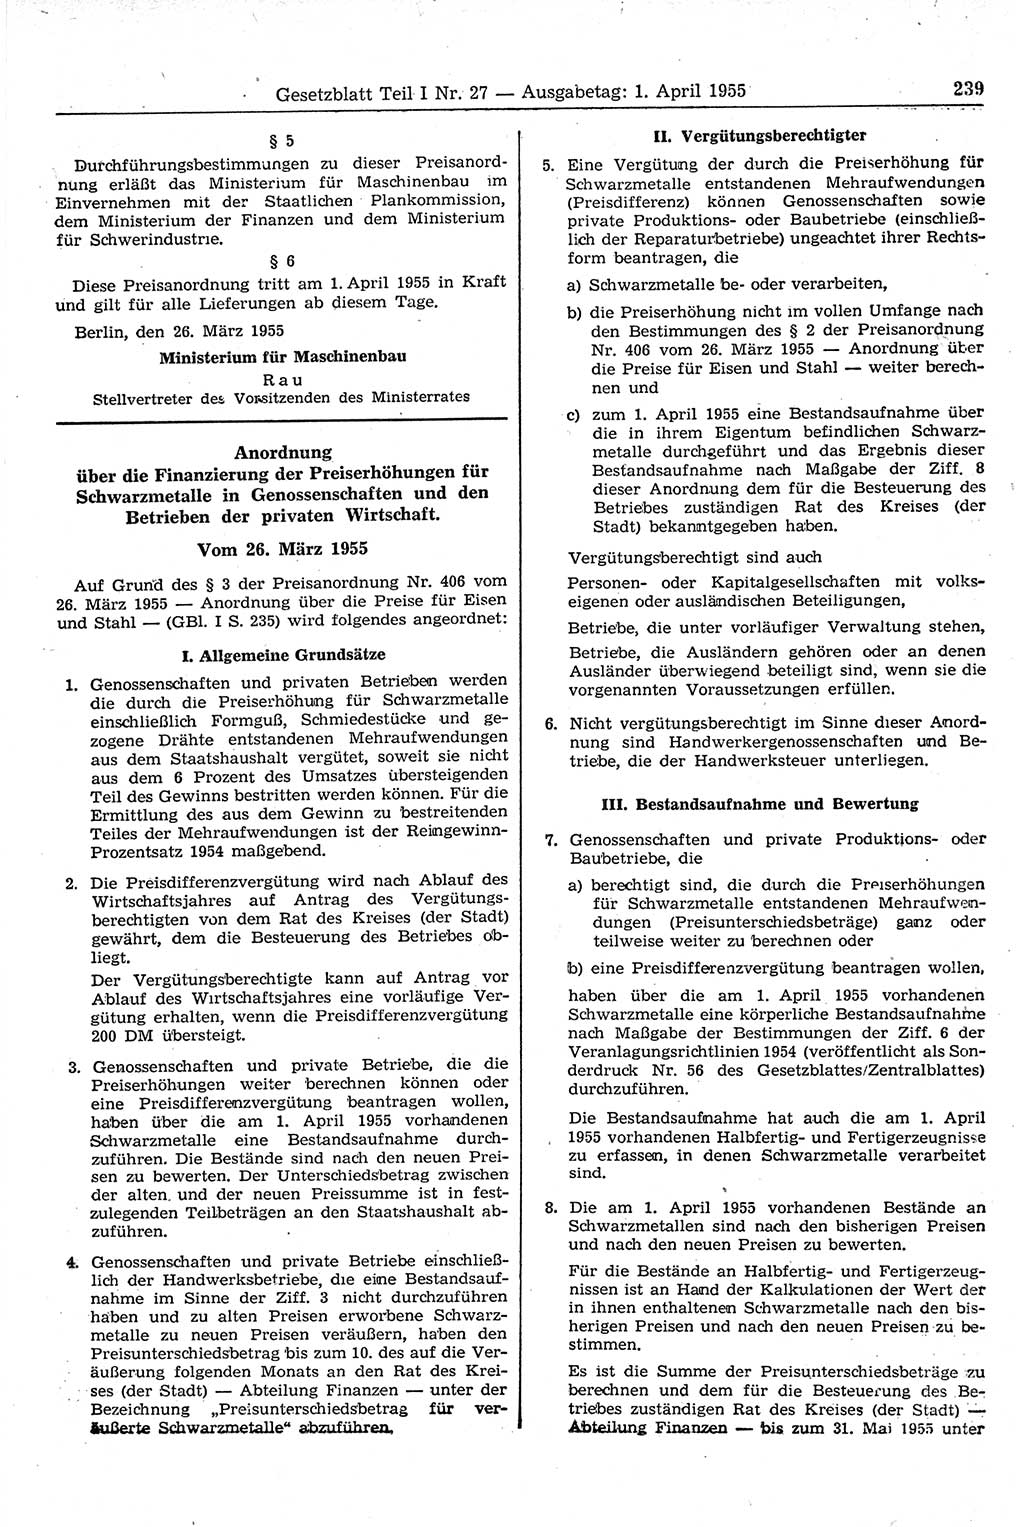 Gesetzblatt (GBl.) der Deutschen Demokratischen Republik (DDR) Teil Ⅰ 1955, Seite 239 (GBl. DDR Ⅰ 1955, S. 239)